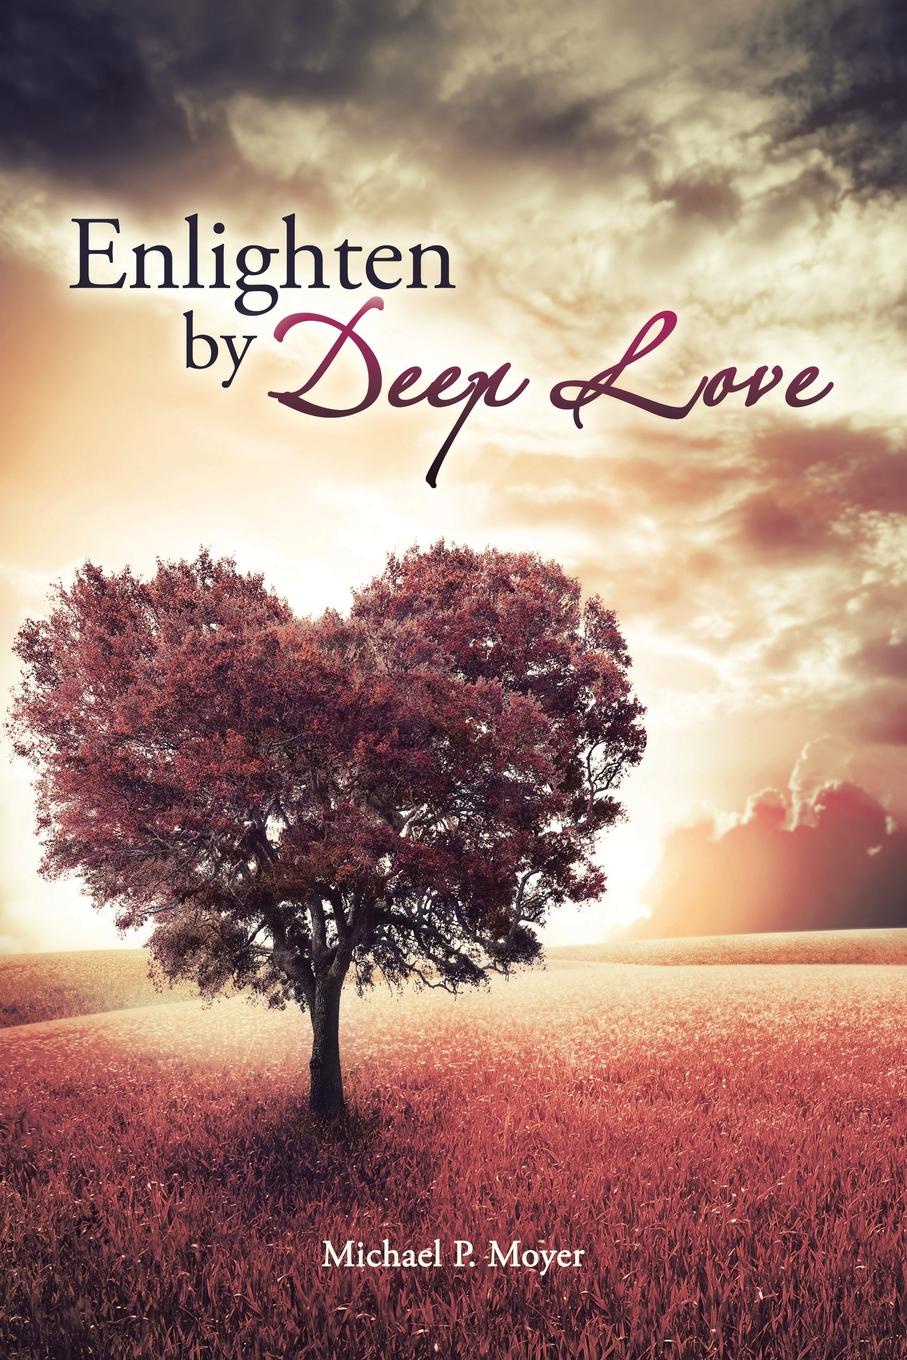 Enlighten by Deep Love